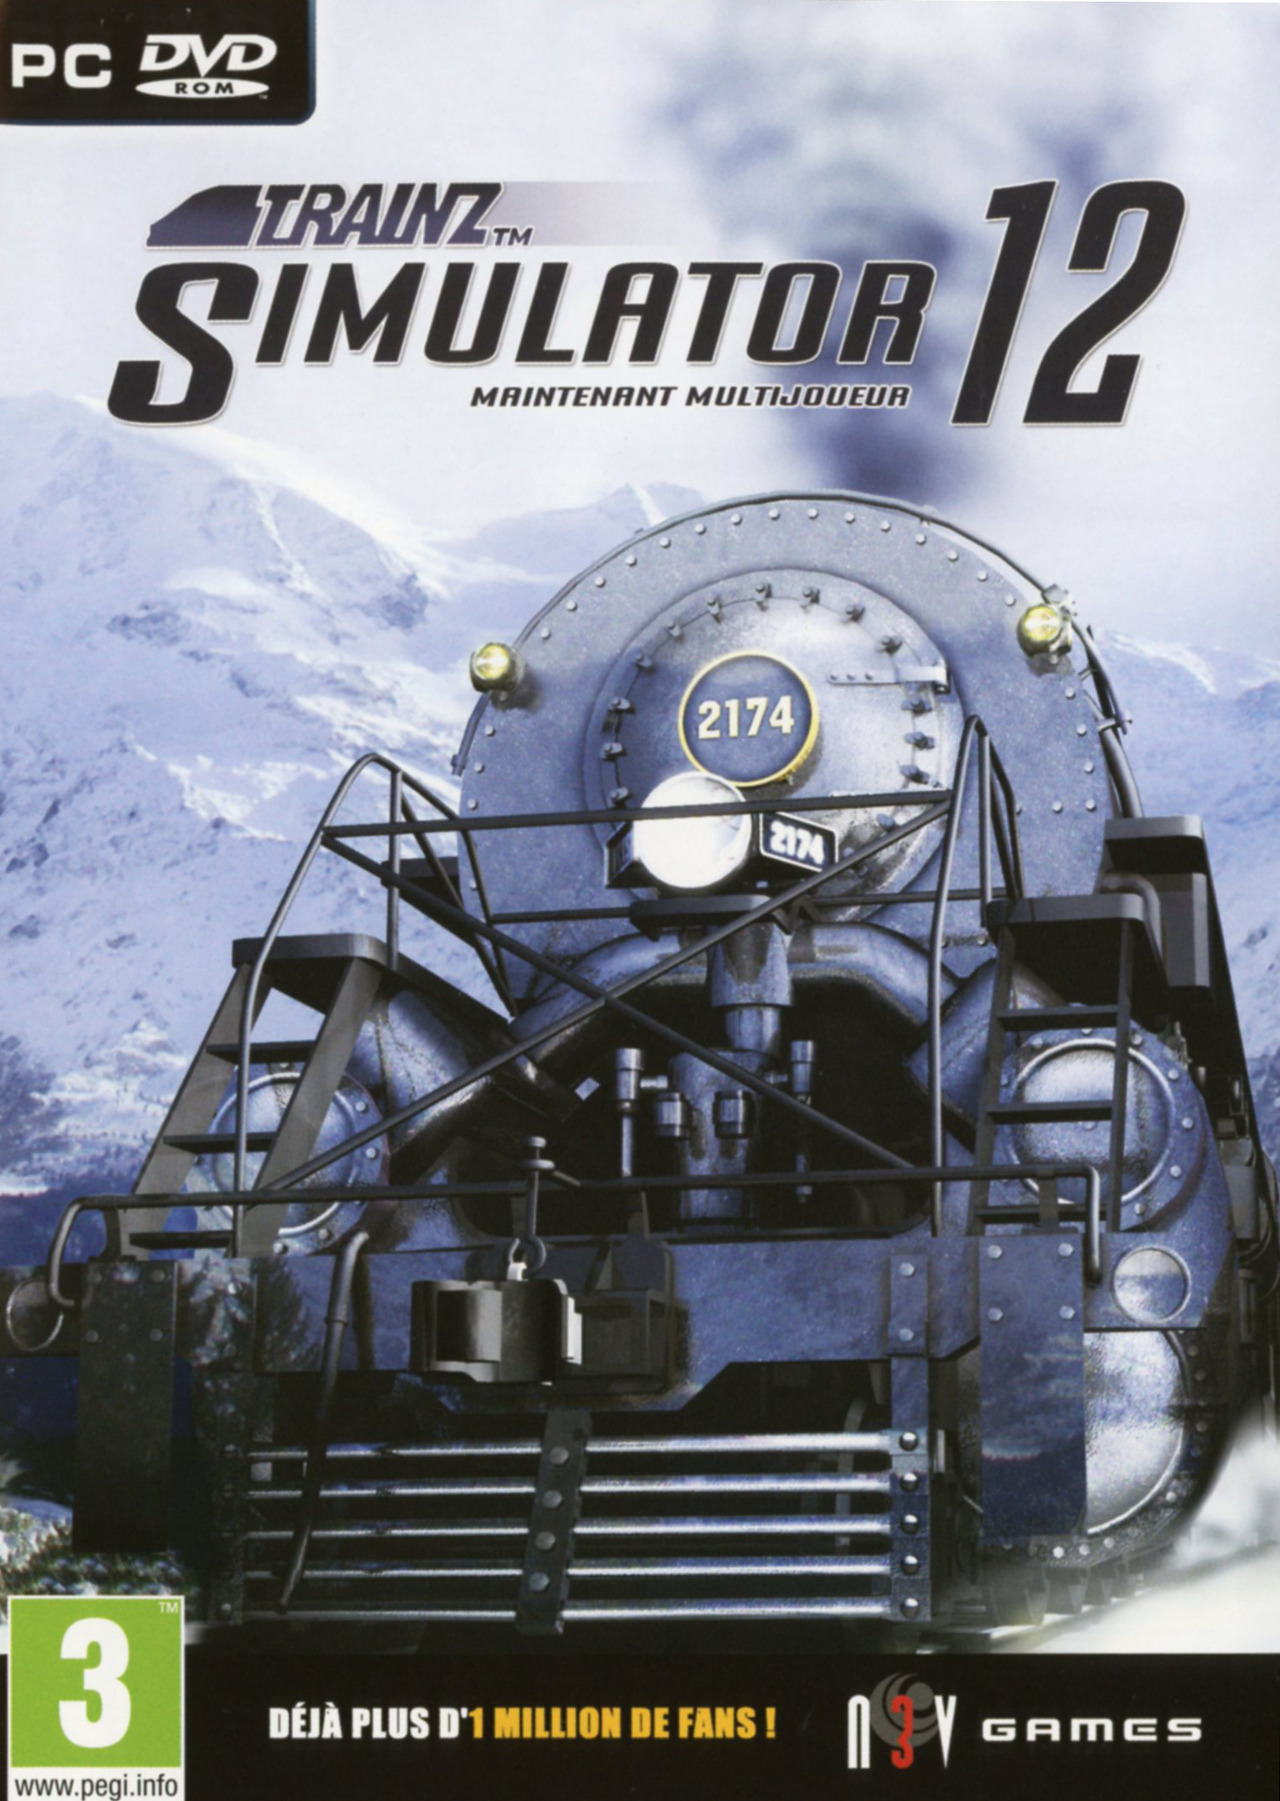 Trainz Simulator, jouer au petit train sur Mac